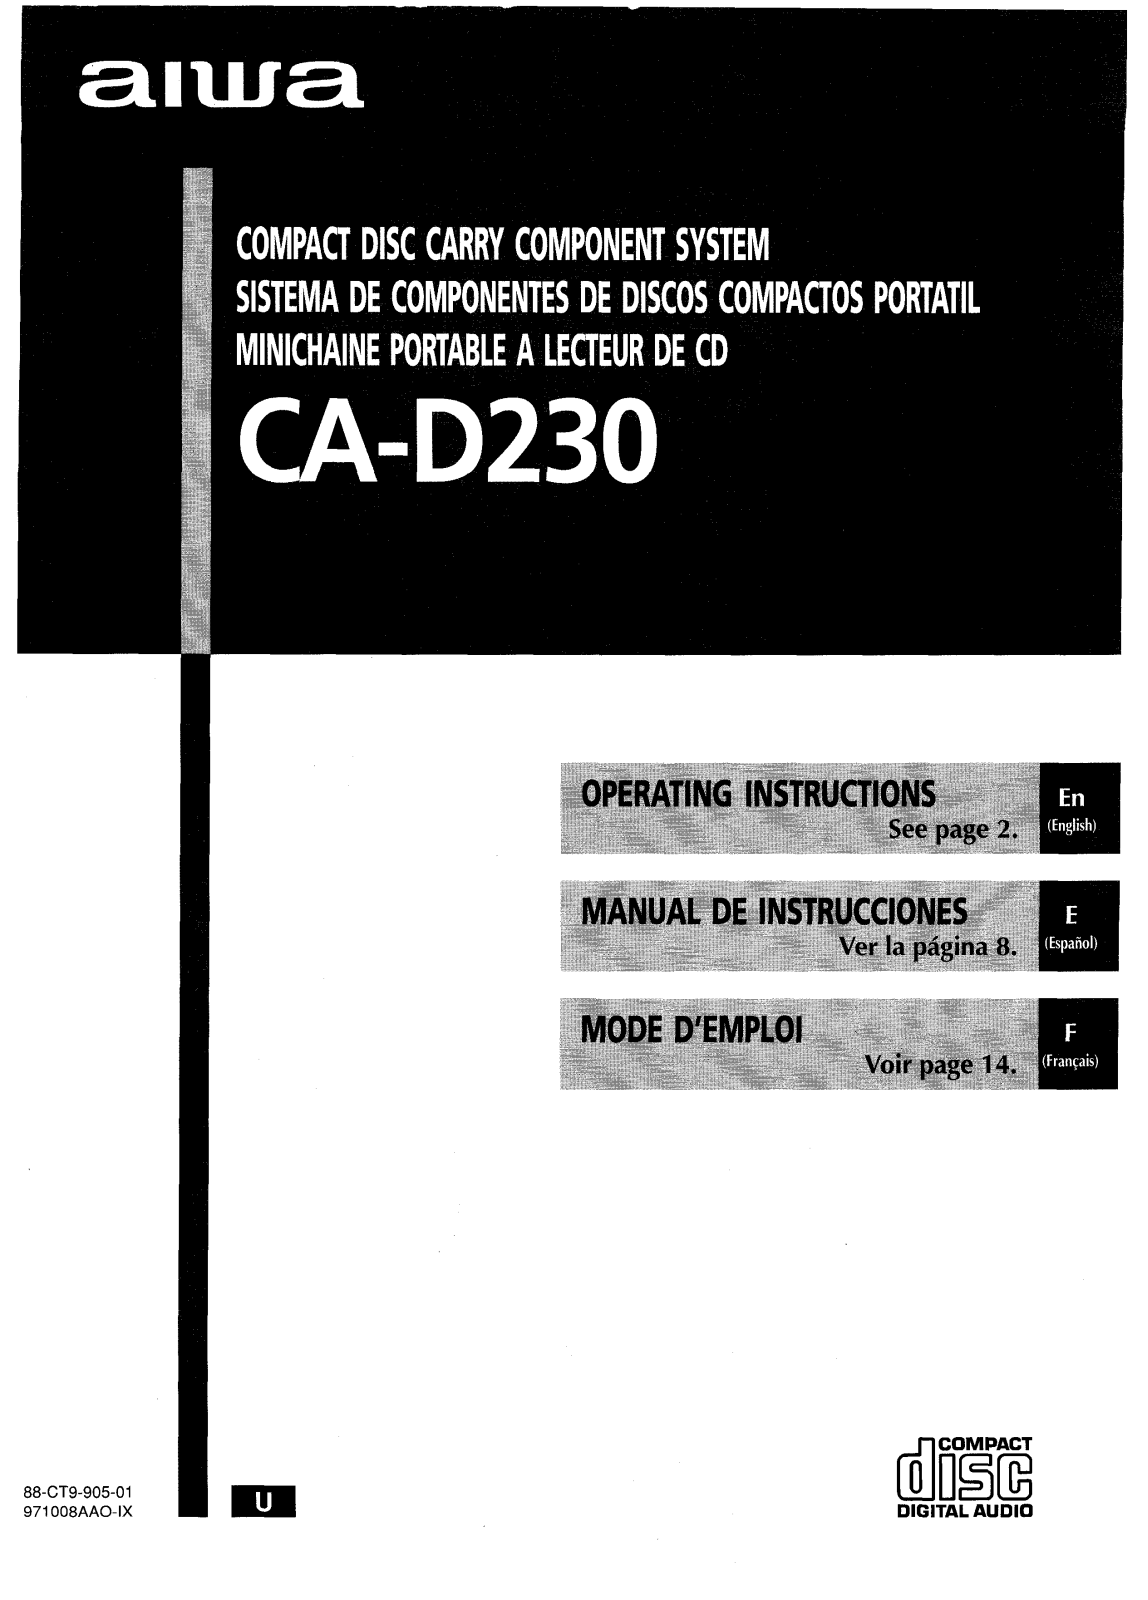 AIWA CA-D230 Operating Instructions